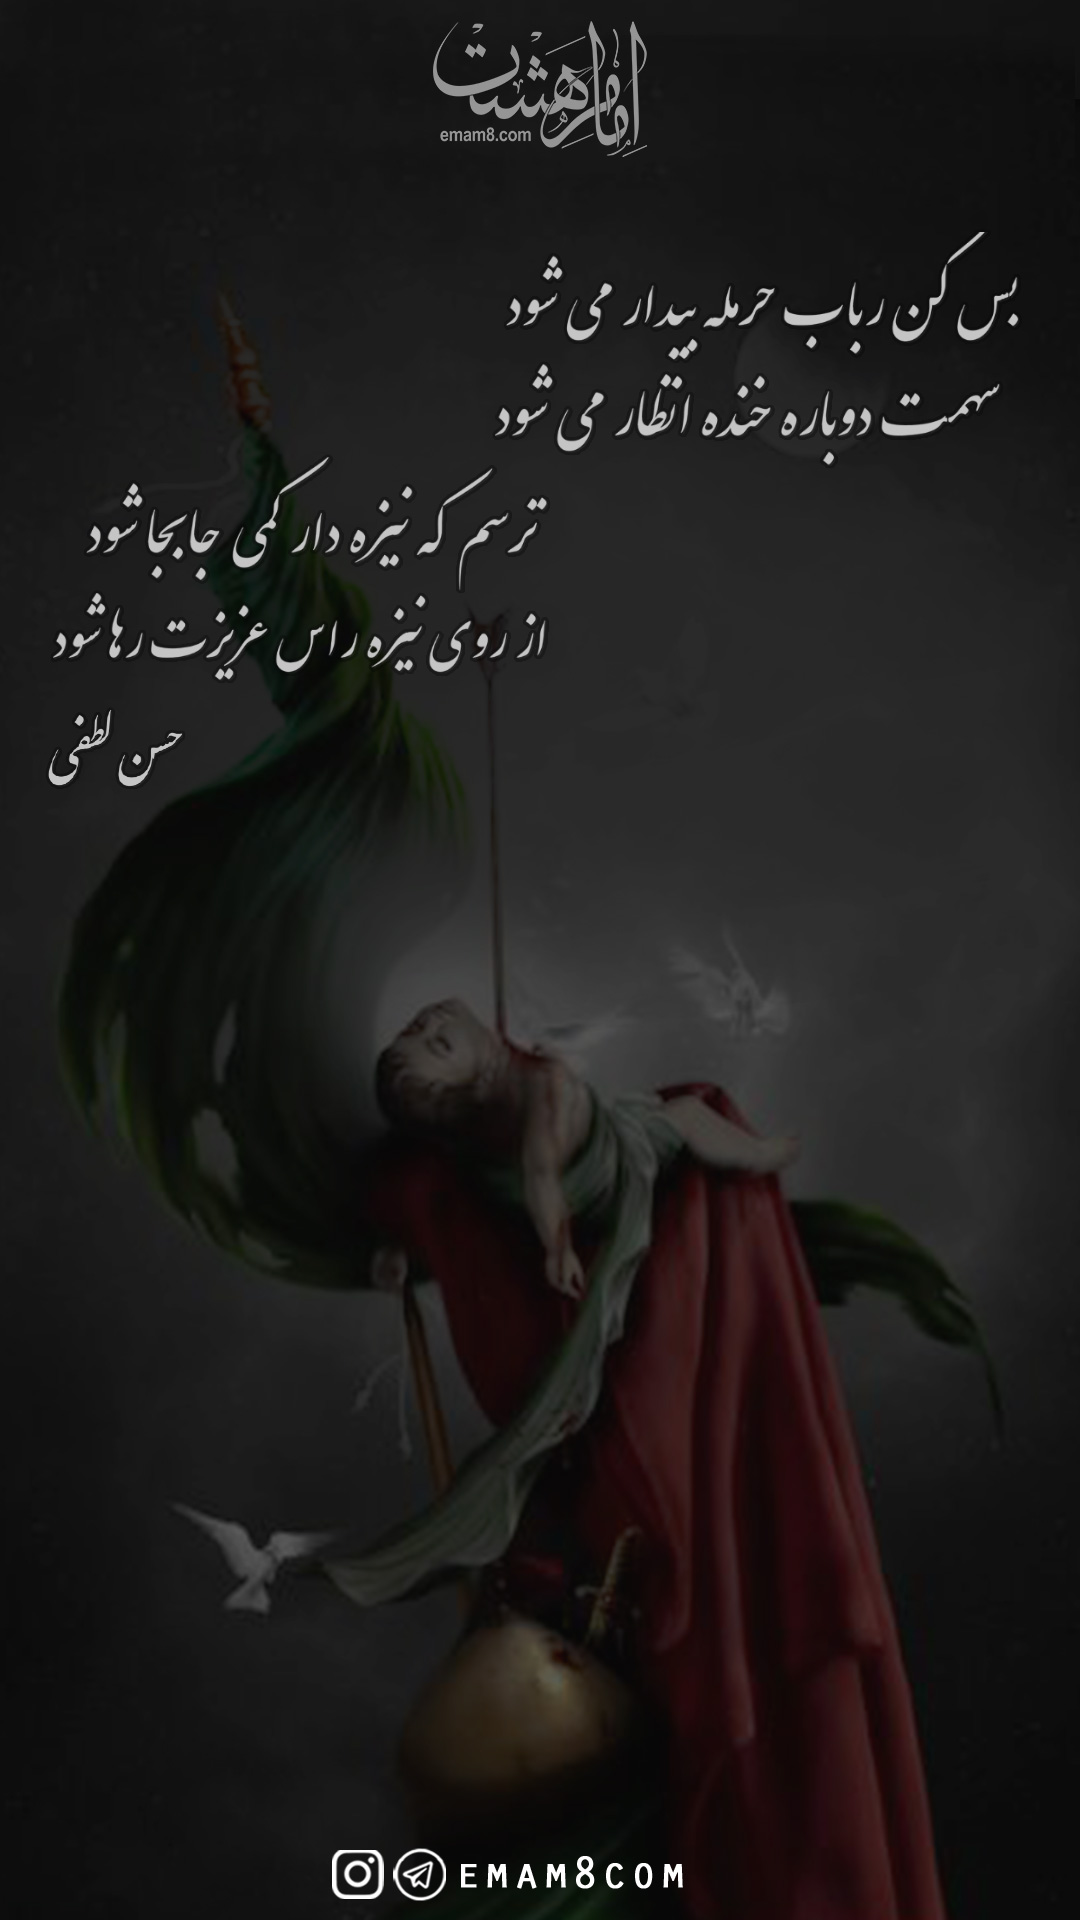 شعر حضرت علی اصغر(بس کن رباب نیمه ای از شب گذشته است)